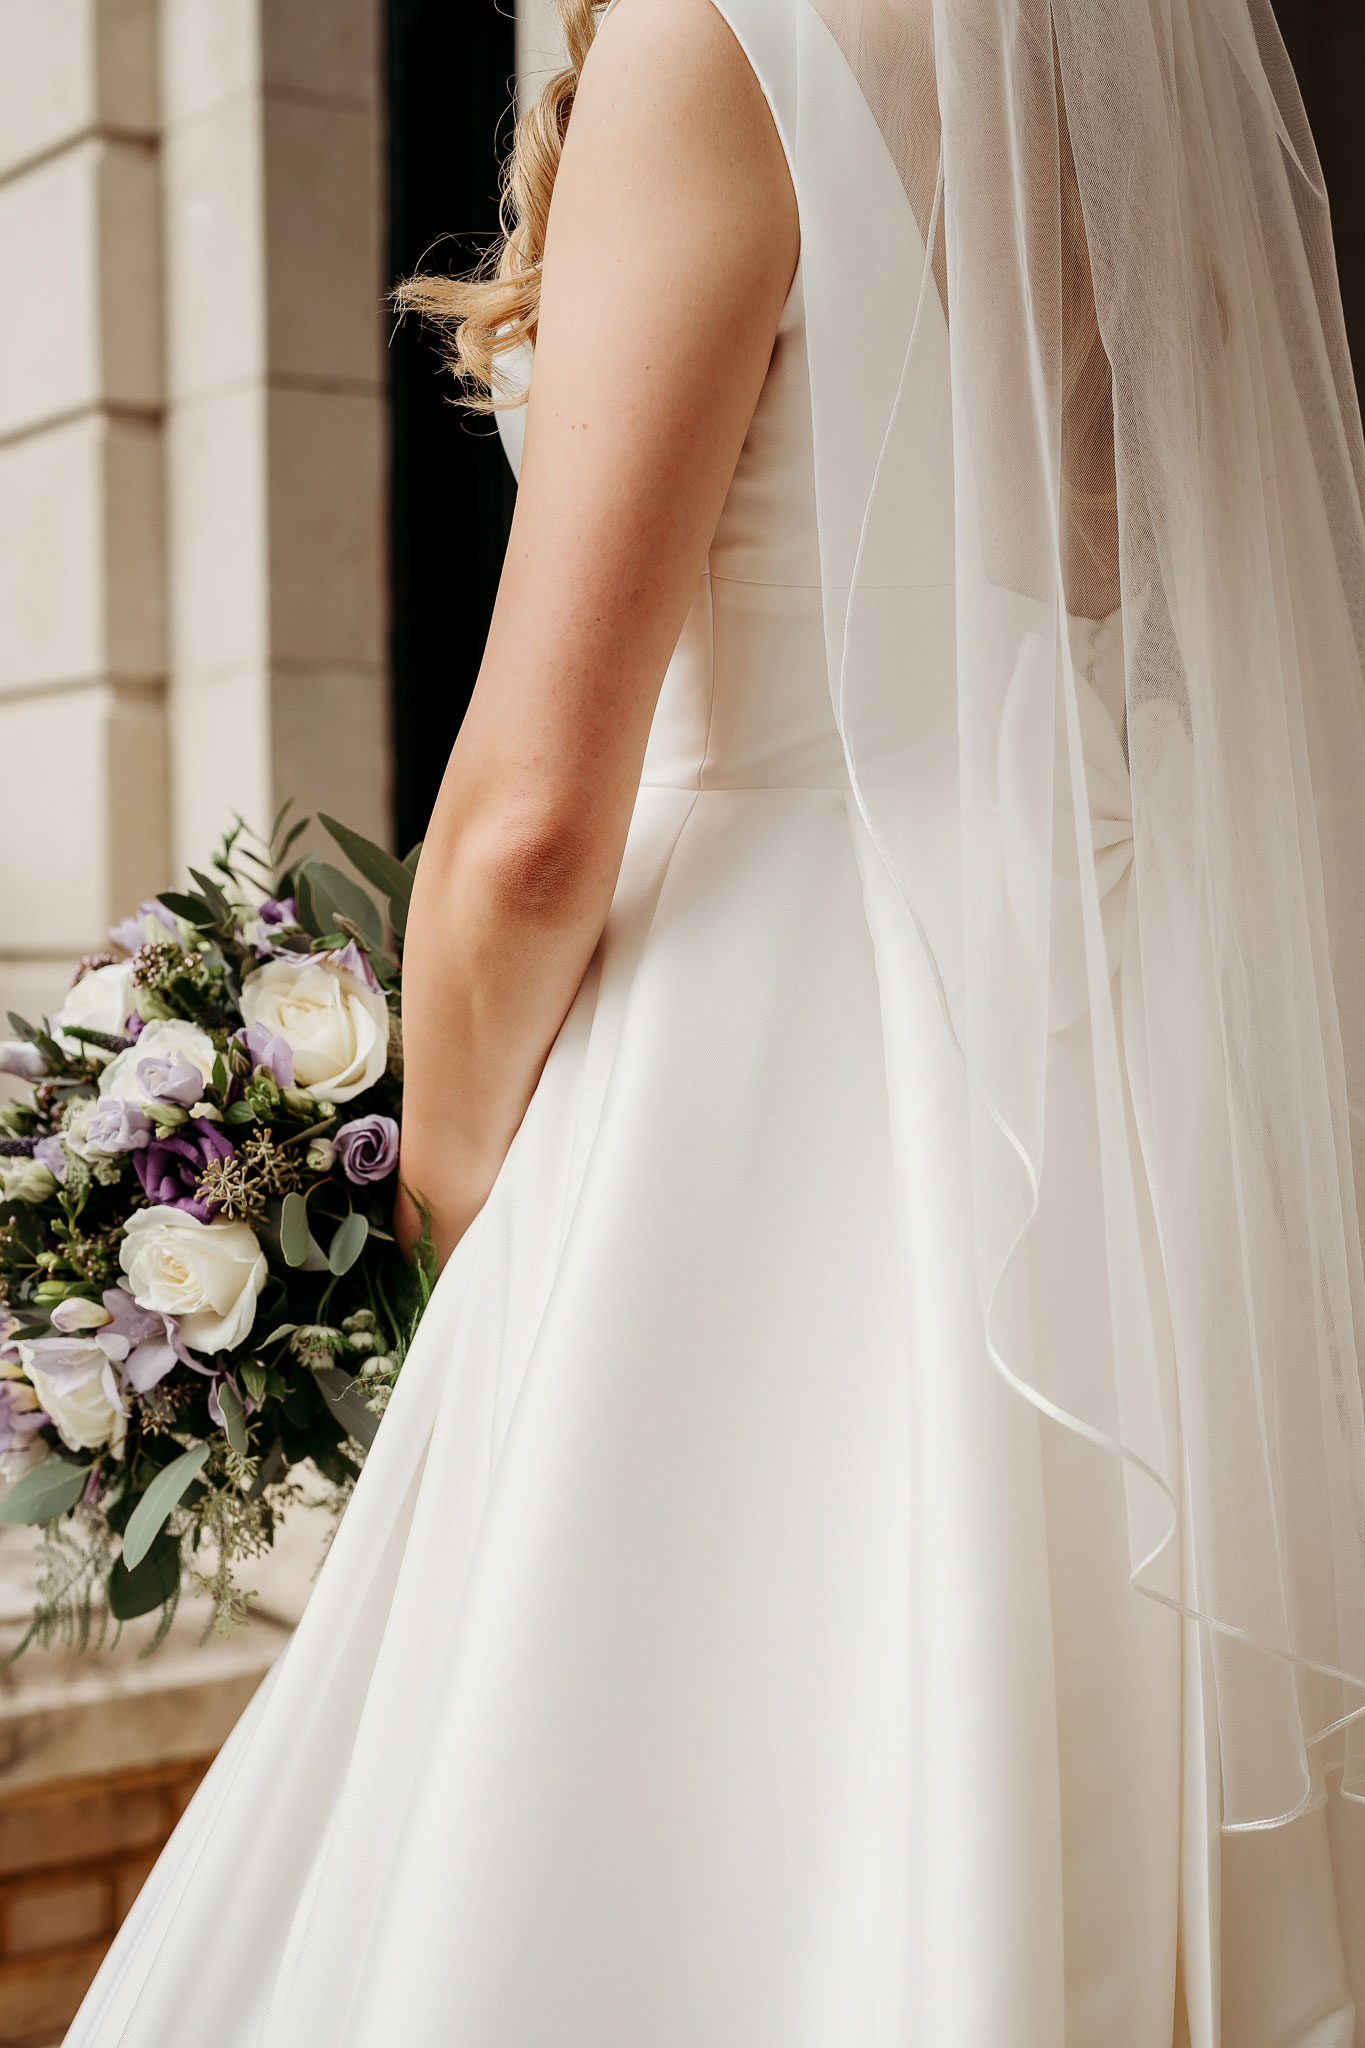 a close up of the brides bouquet